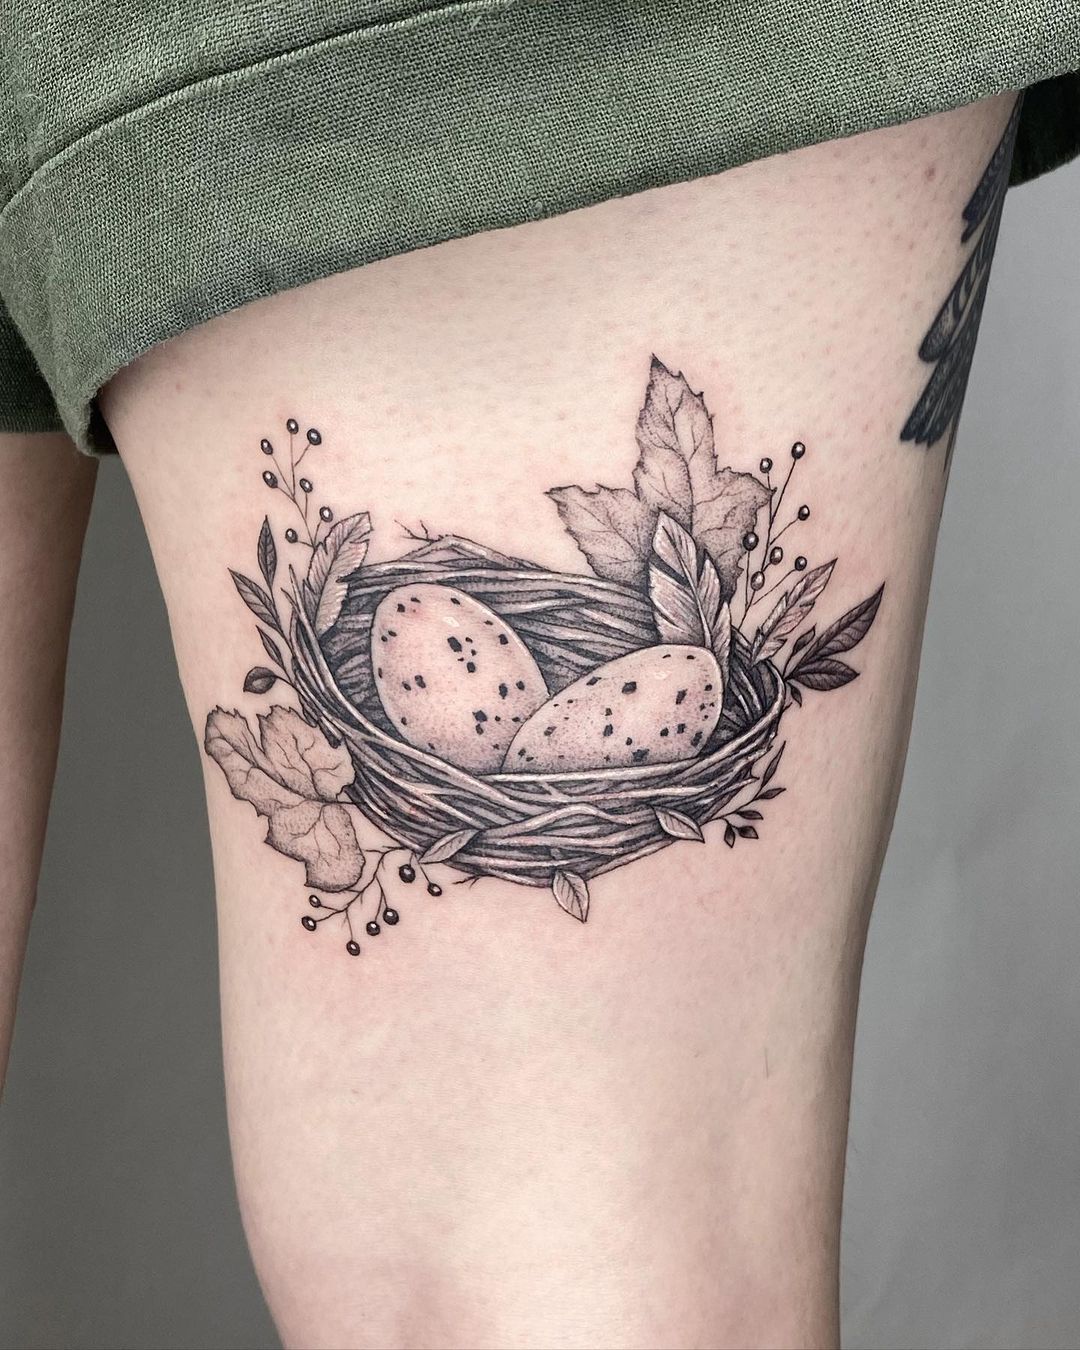 Pin by LisaMarie Laufeyson on Tattoos | Tattoo magazines, Sick tattoo,  Inspirational tattoos